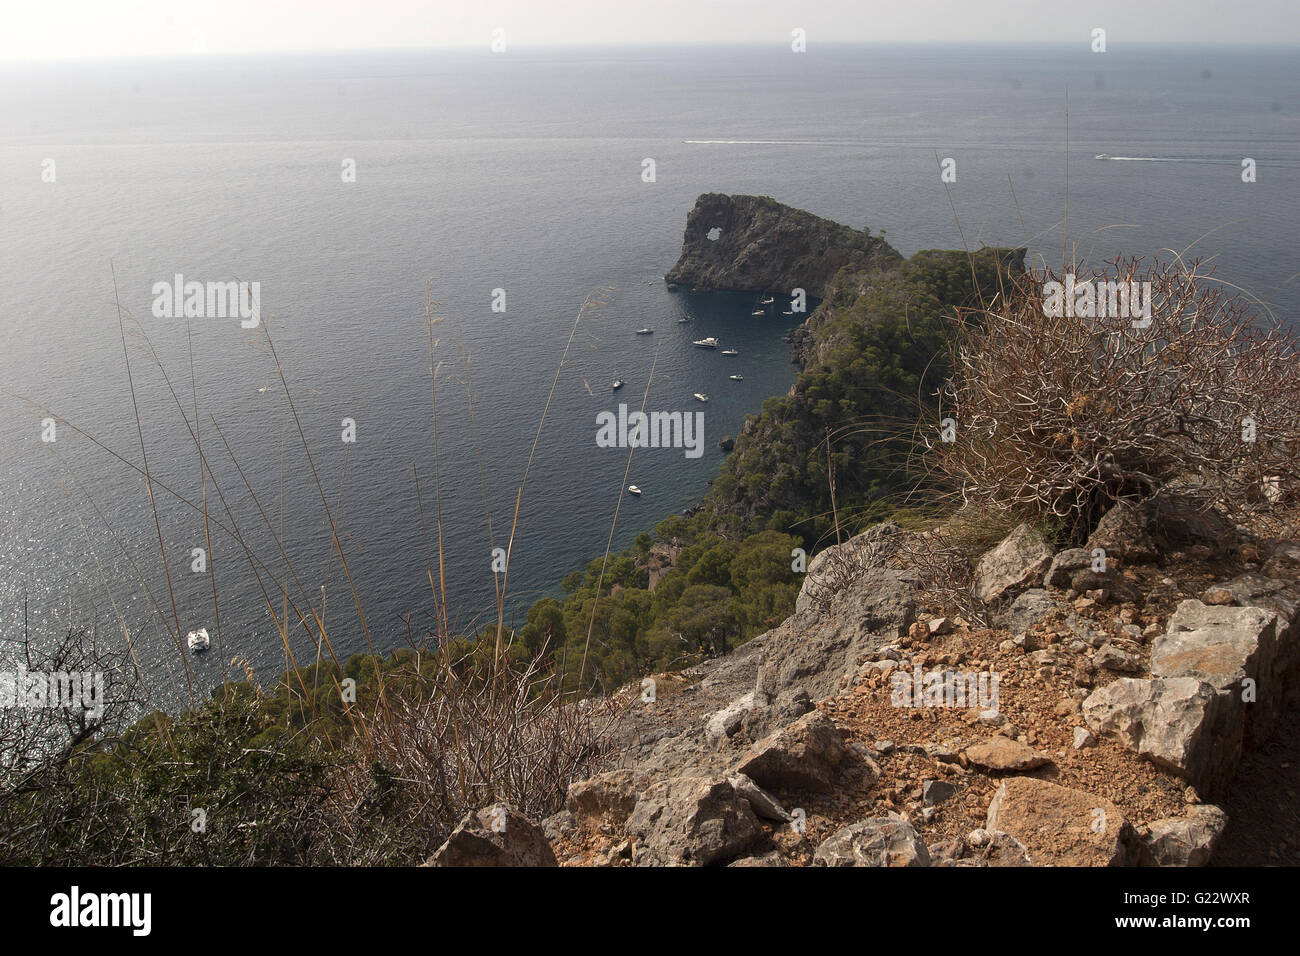 ein schönes Bild von den Küsten blaues Meer mit Felsen und Vegetation im Vordergrund in Palma De Mallorca, Spanien, am Meer Stockfoto